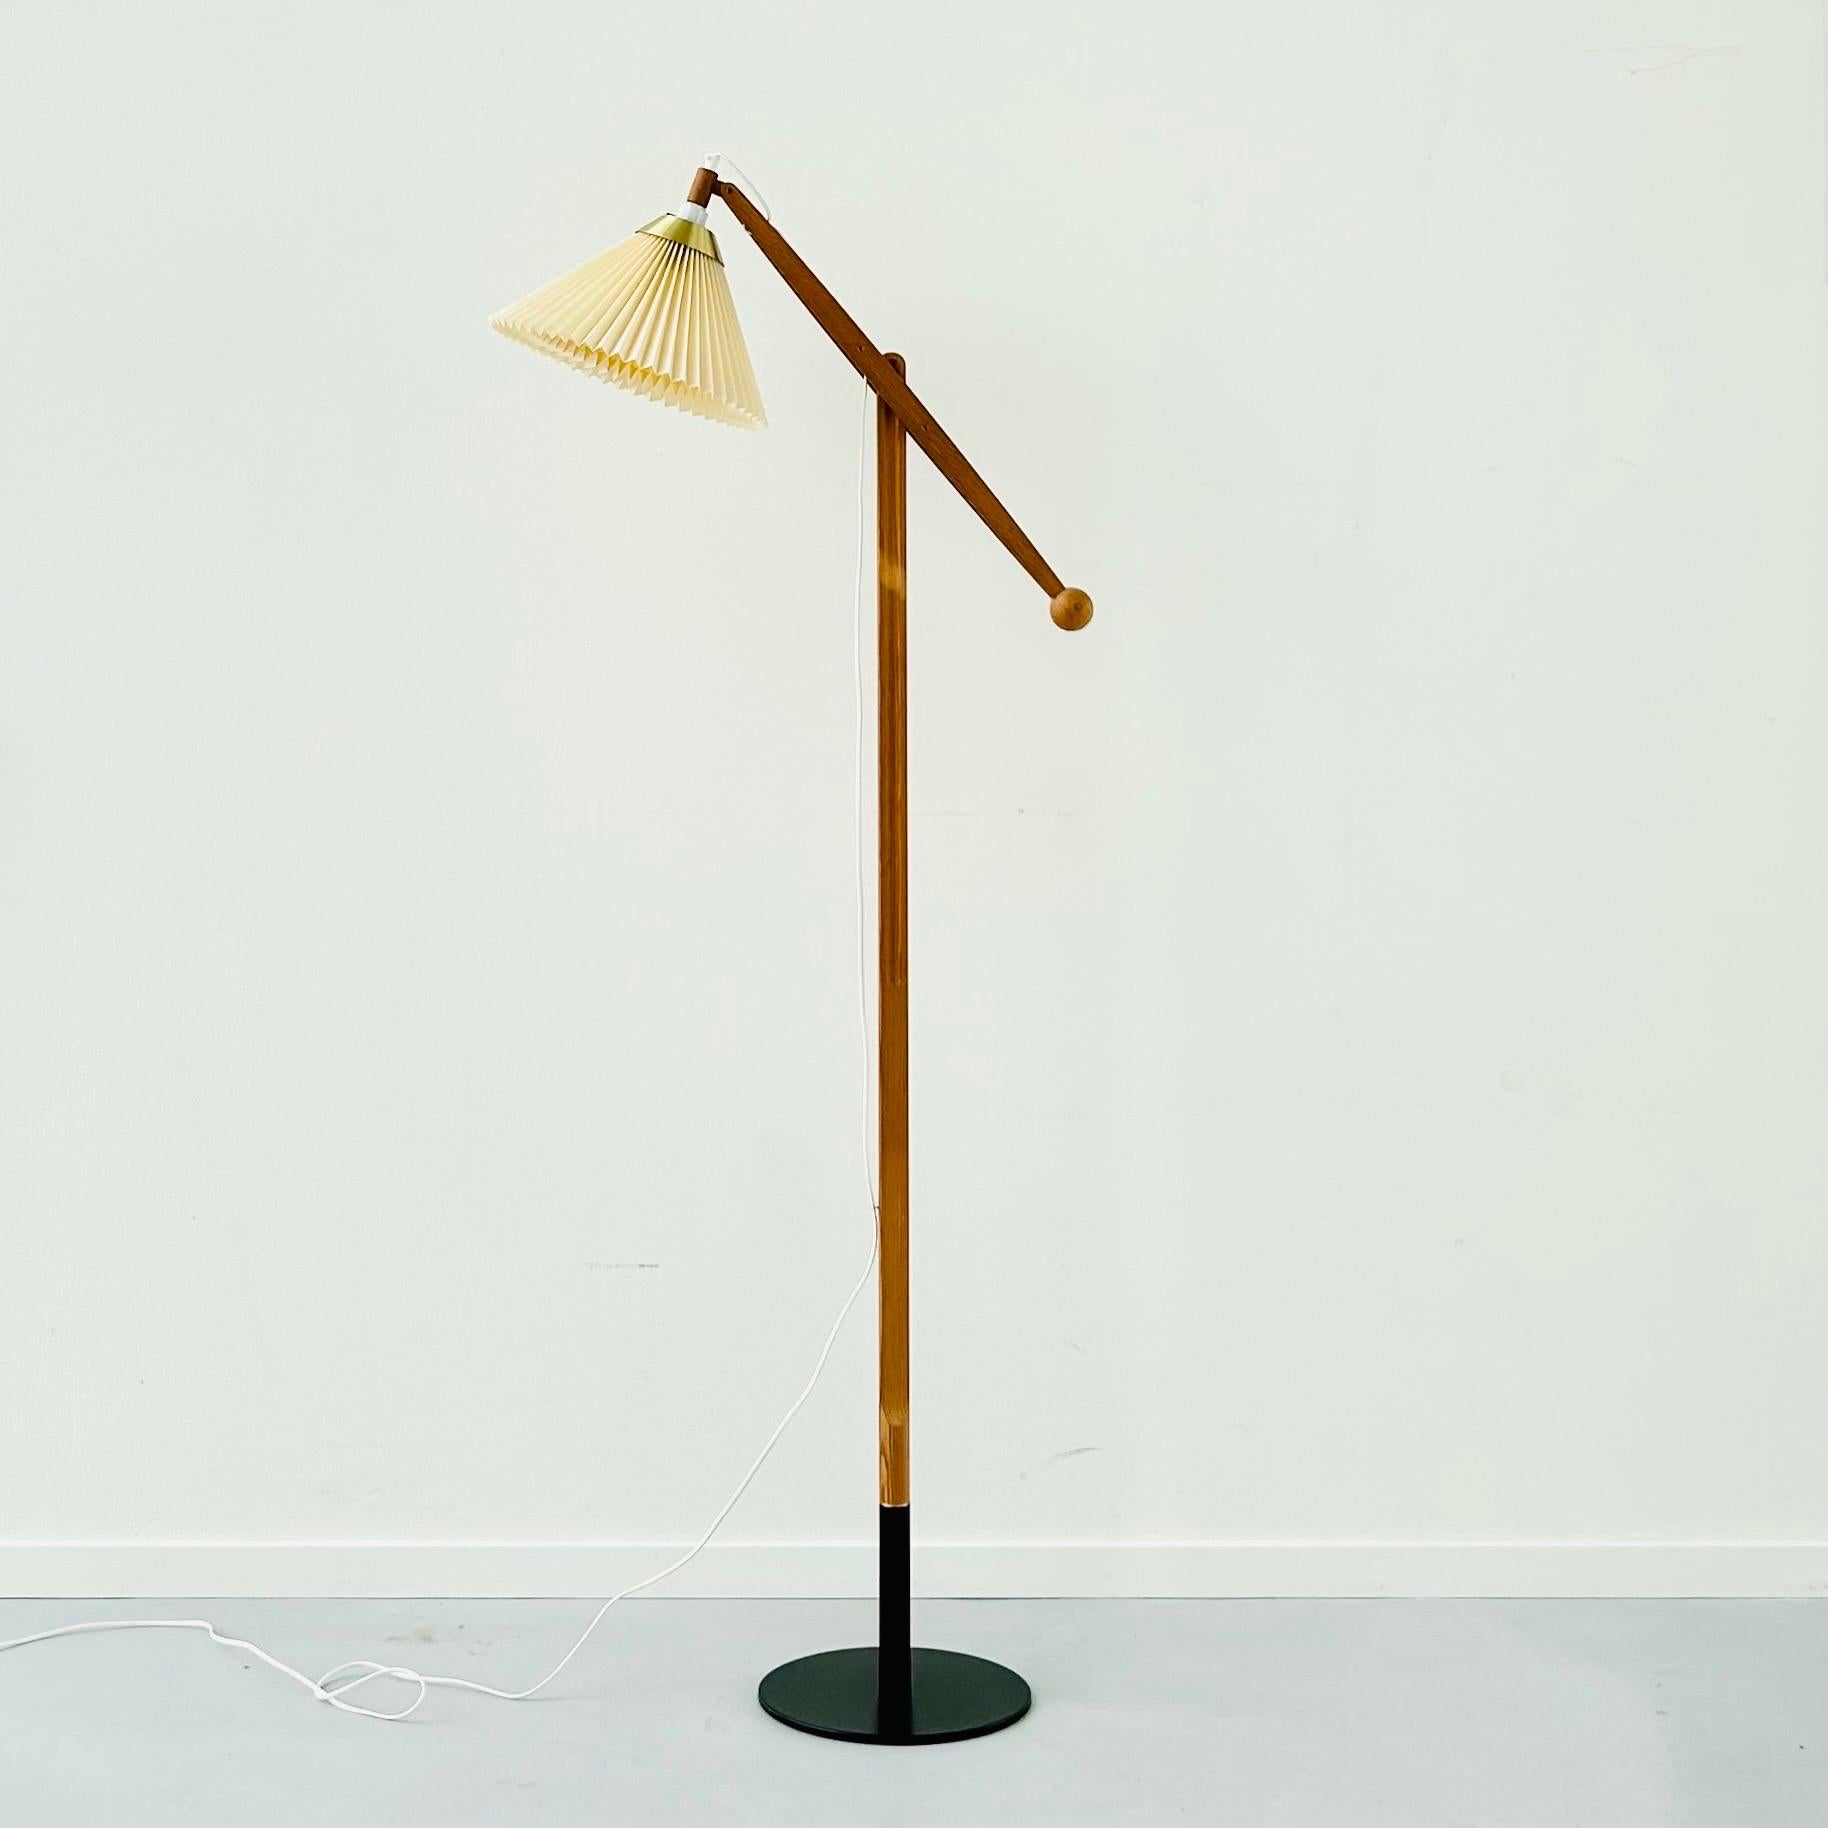 Brass Danish Modern Le Klint Floor Lamp Designed by Vilhelm Wohlert, 1960s, Denmark For Sale